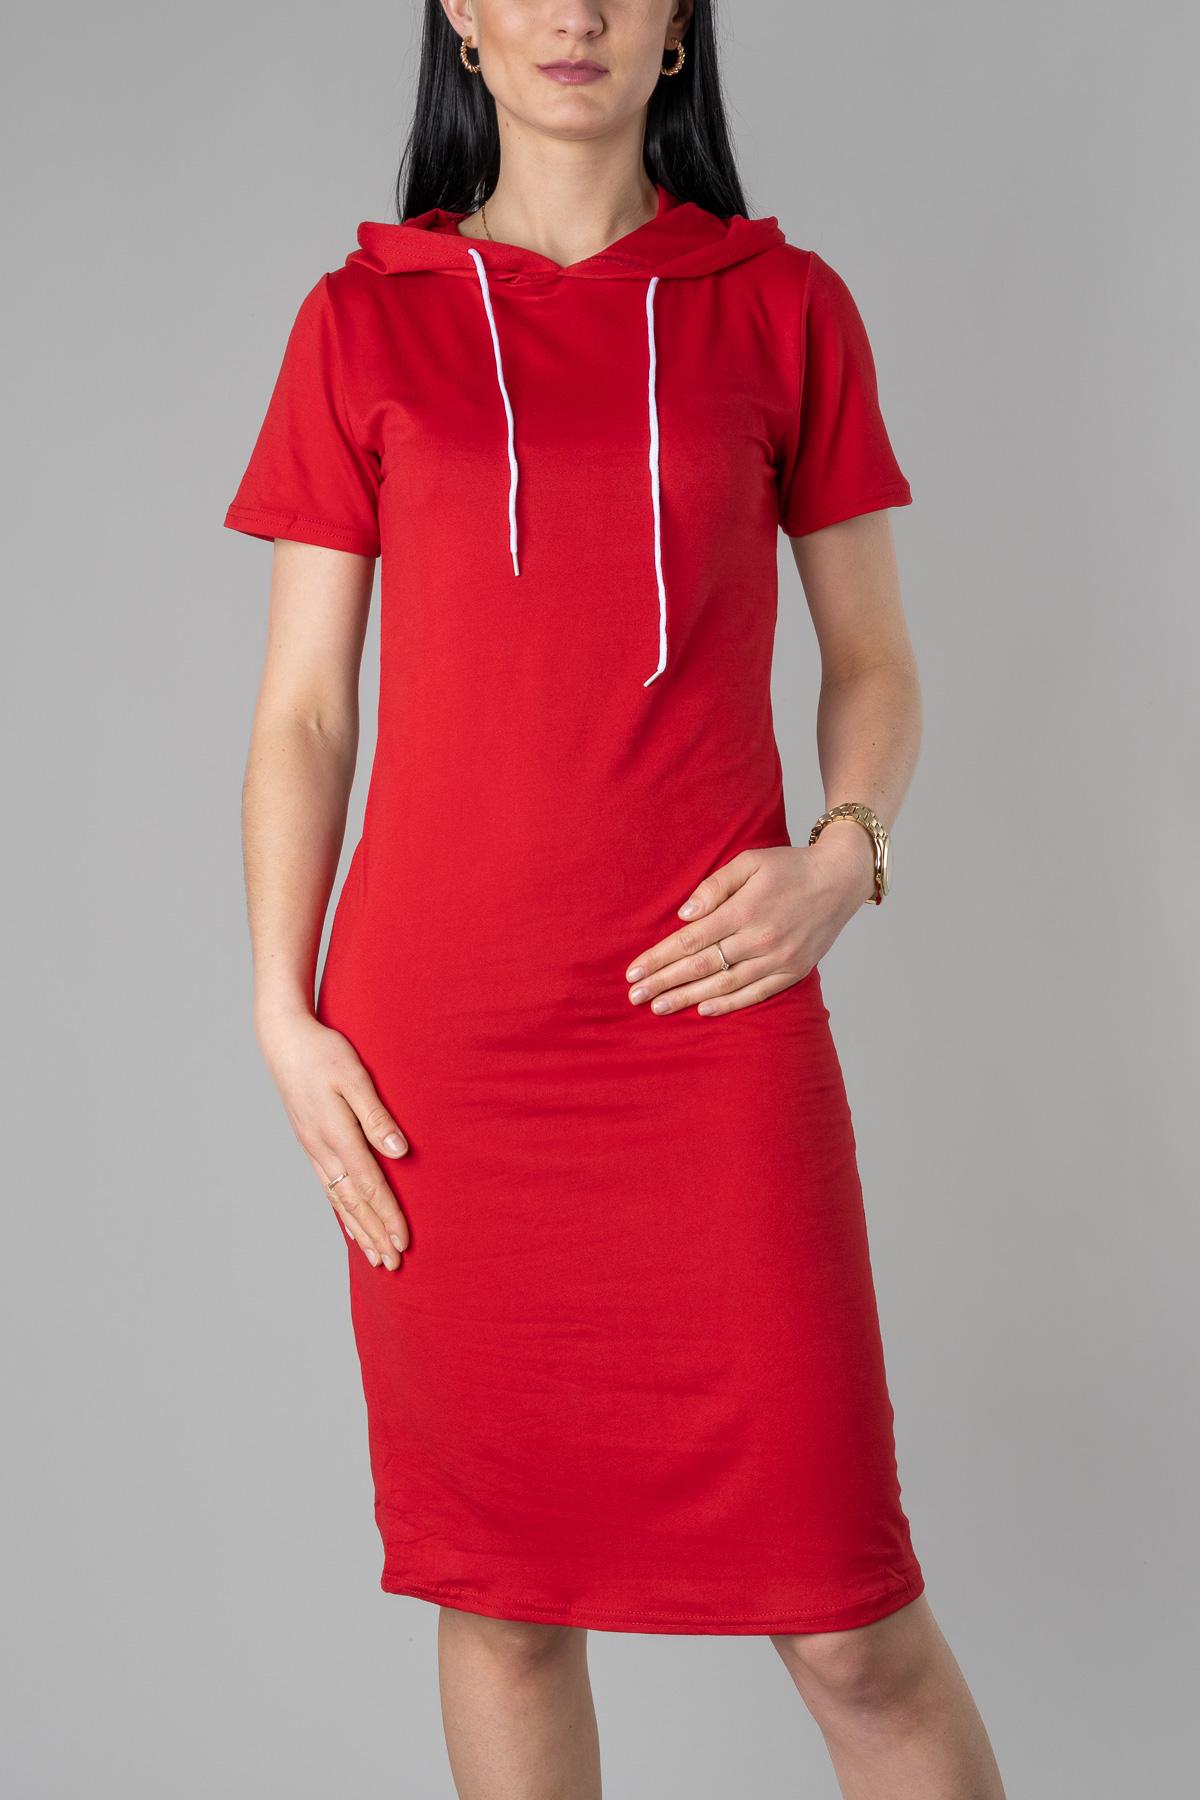 Dámske šaty s kapucňou - červené